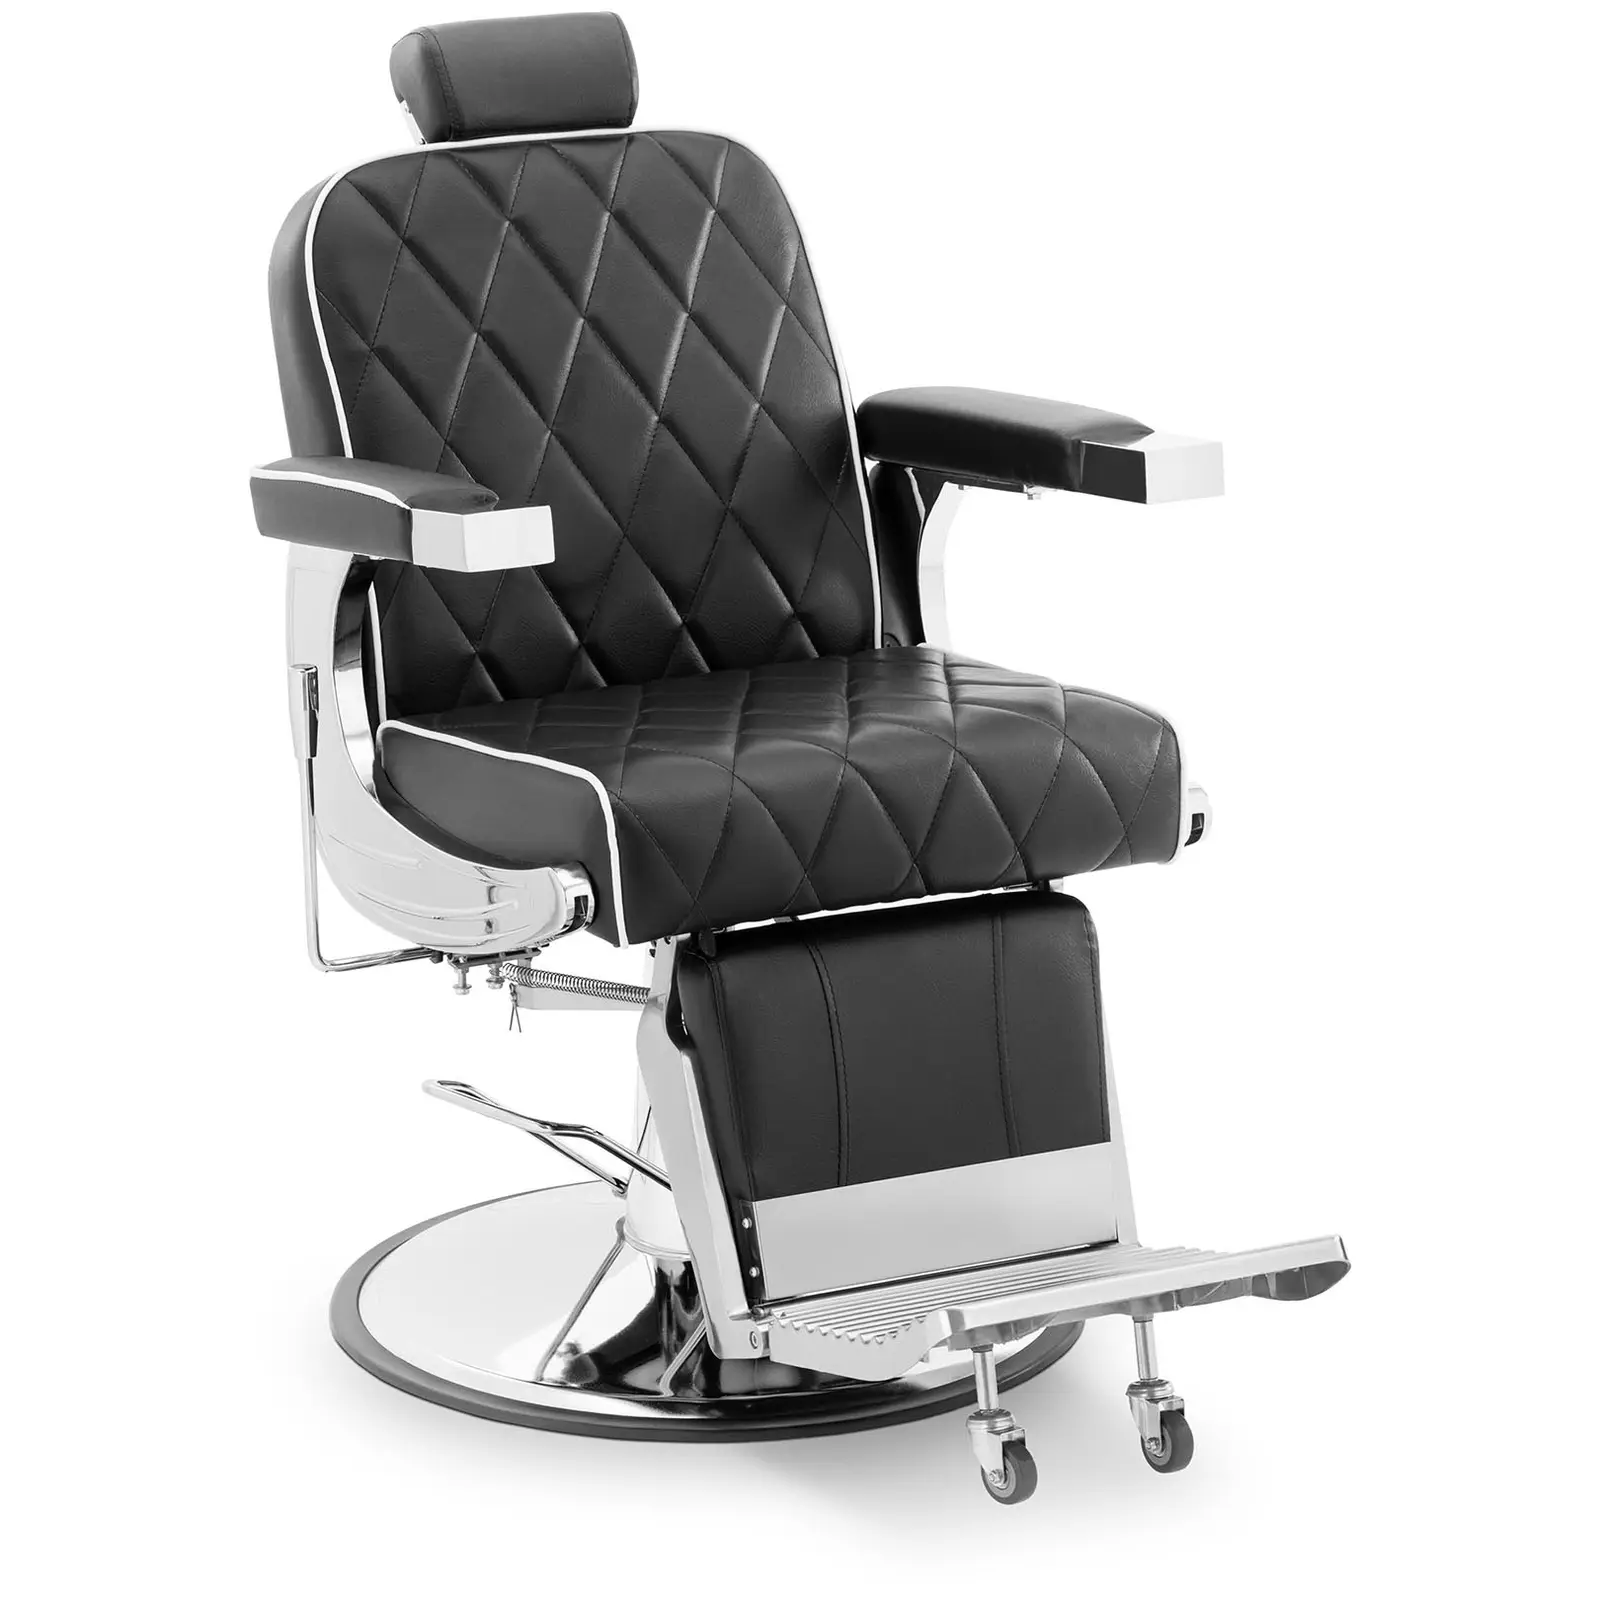 Salon chair - Head and footrest - Footrest - 58 - 71 cm - 150 kg - tiltable - black